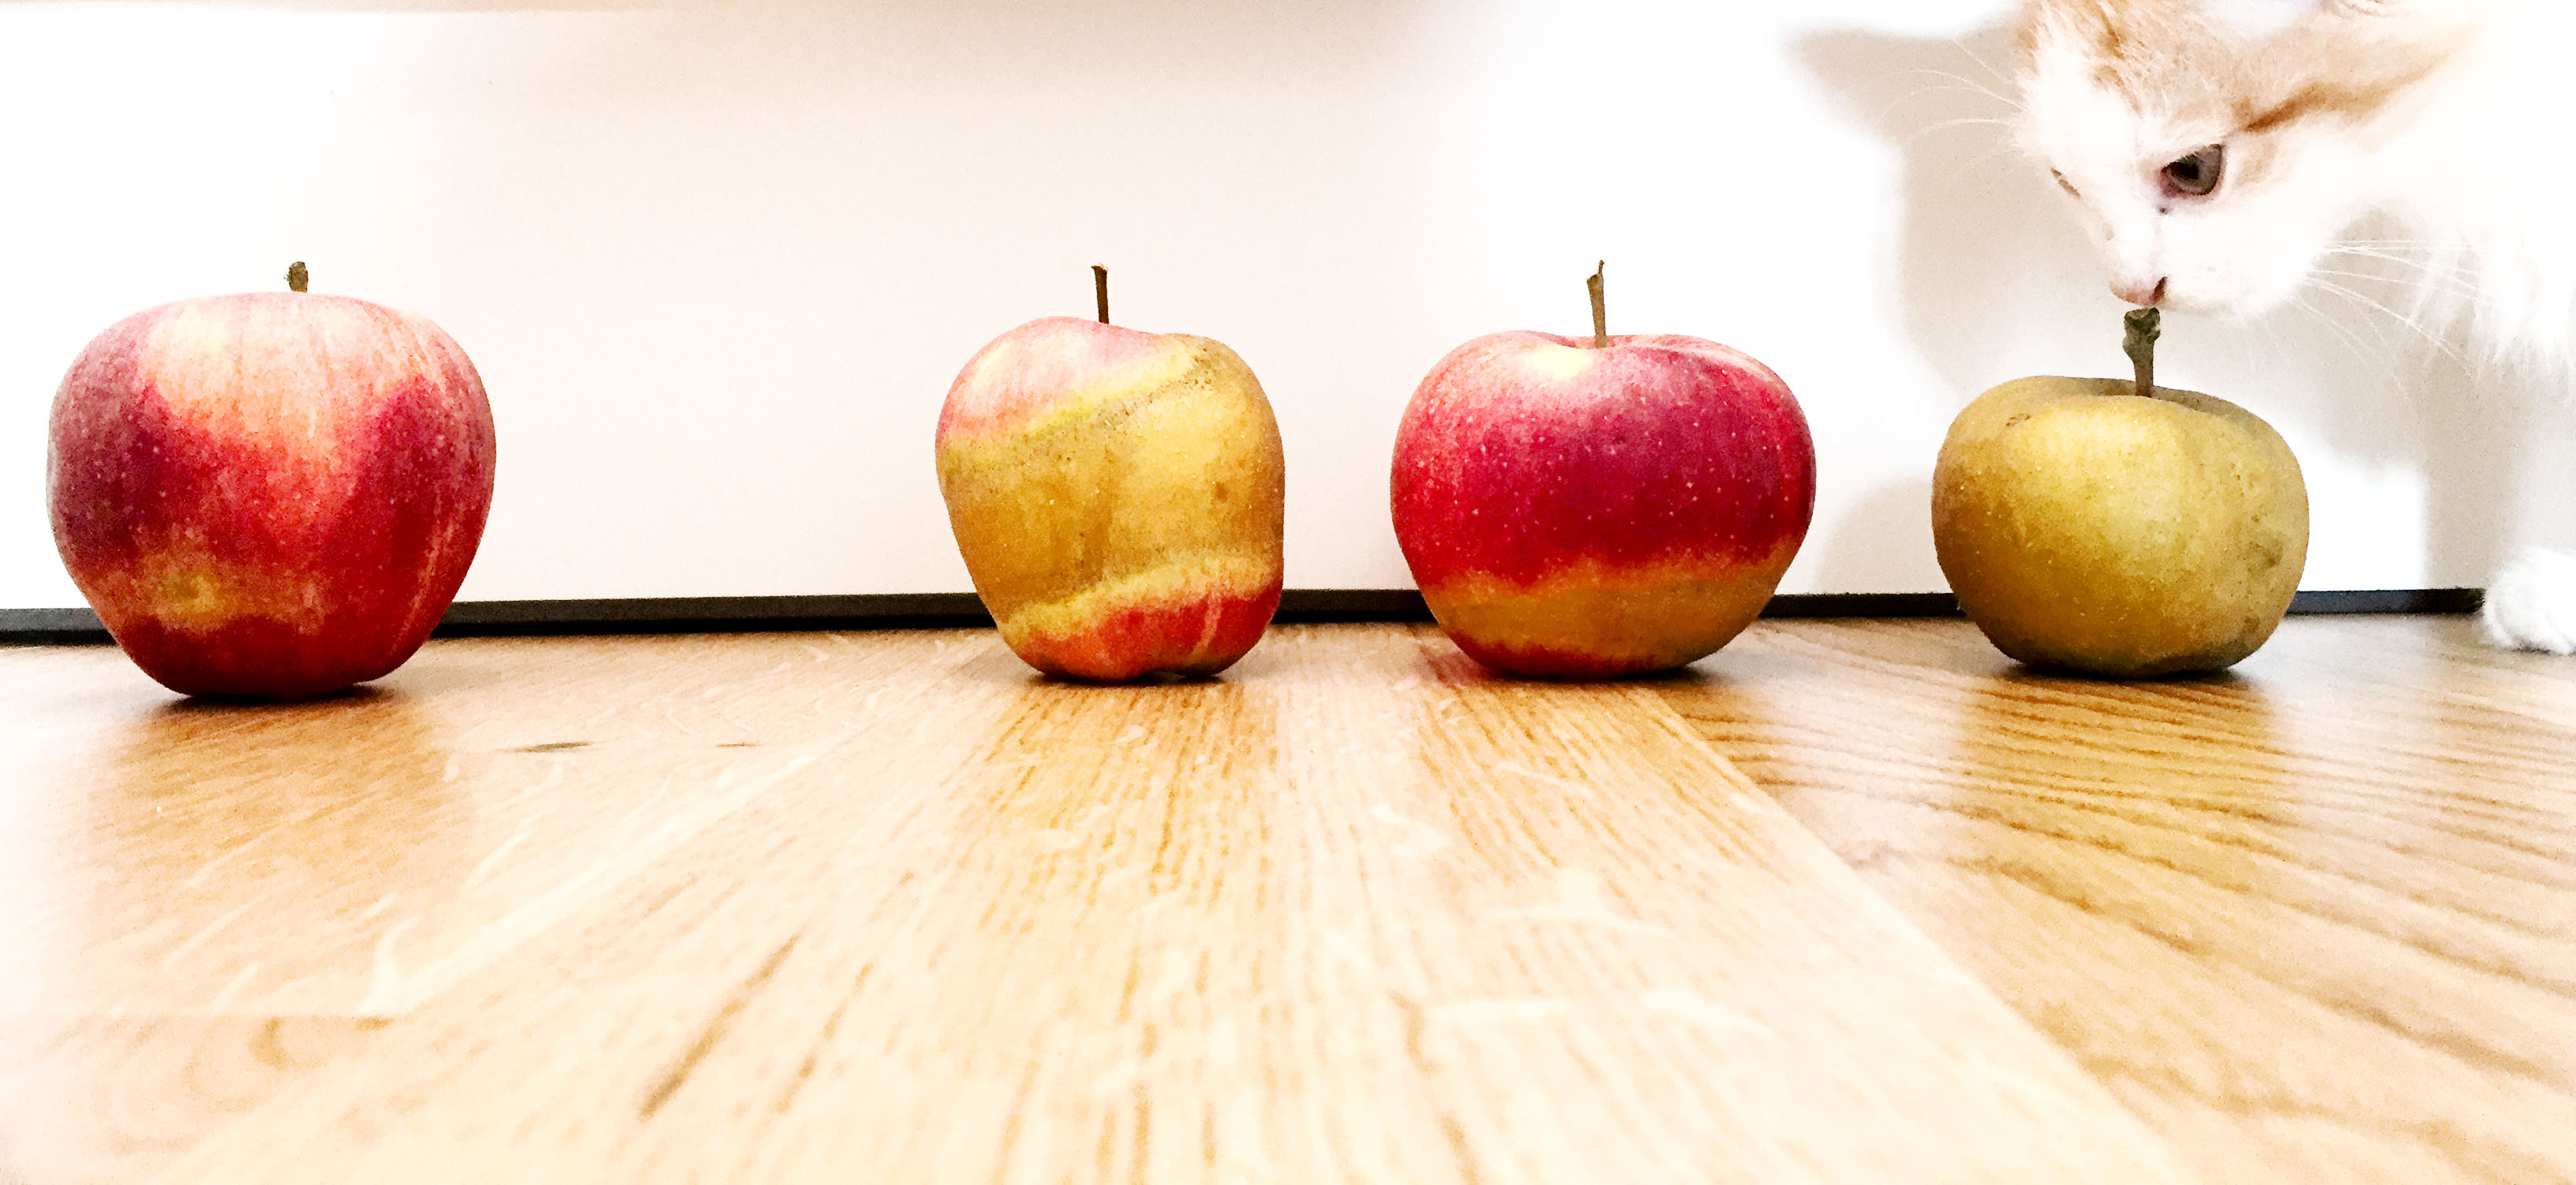 #vawoadaglt: Diese Äpfel sind nicht für die Katz! WOS unterstützt heimische Obstbauern